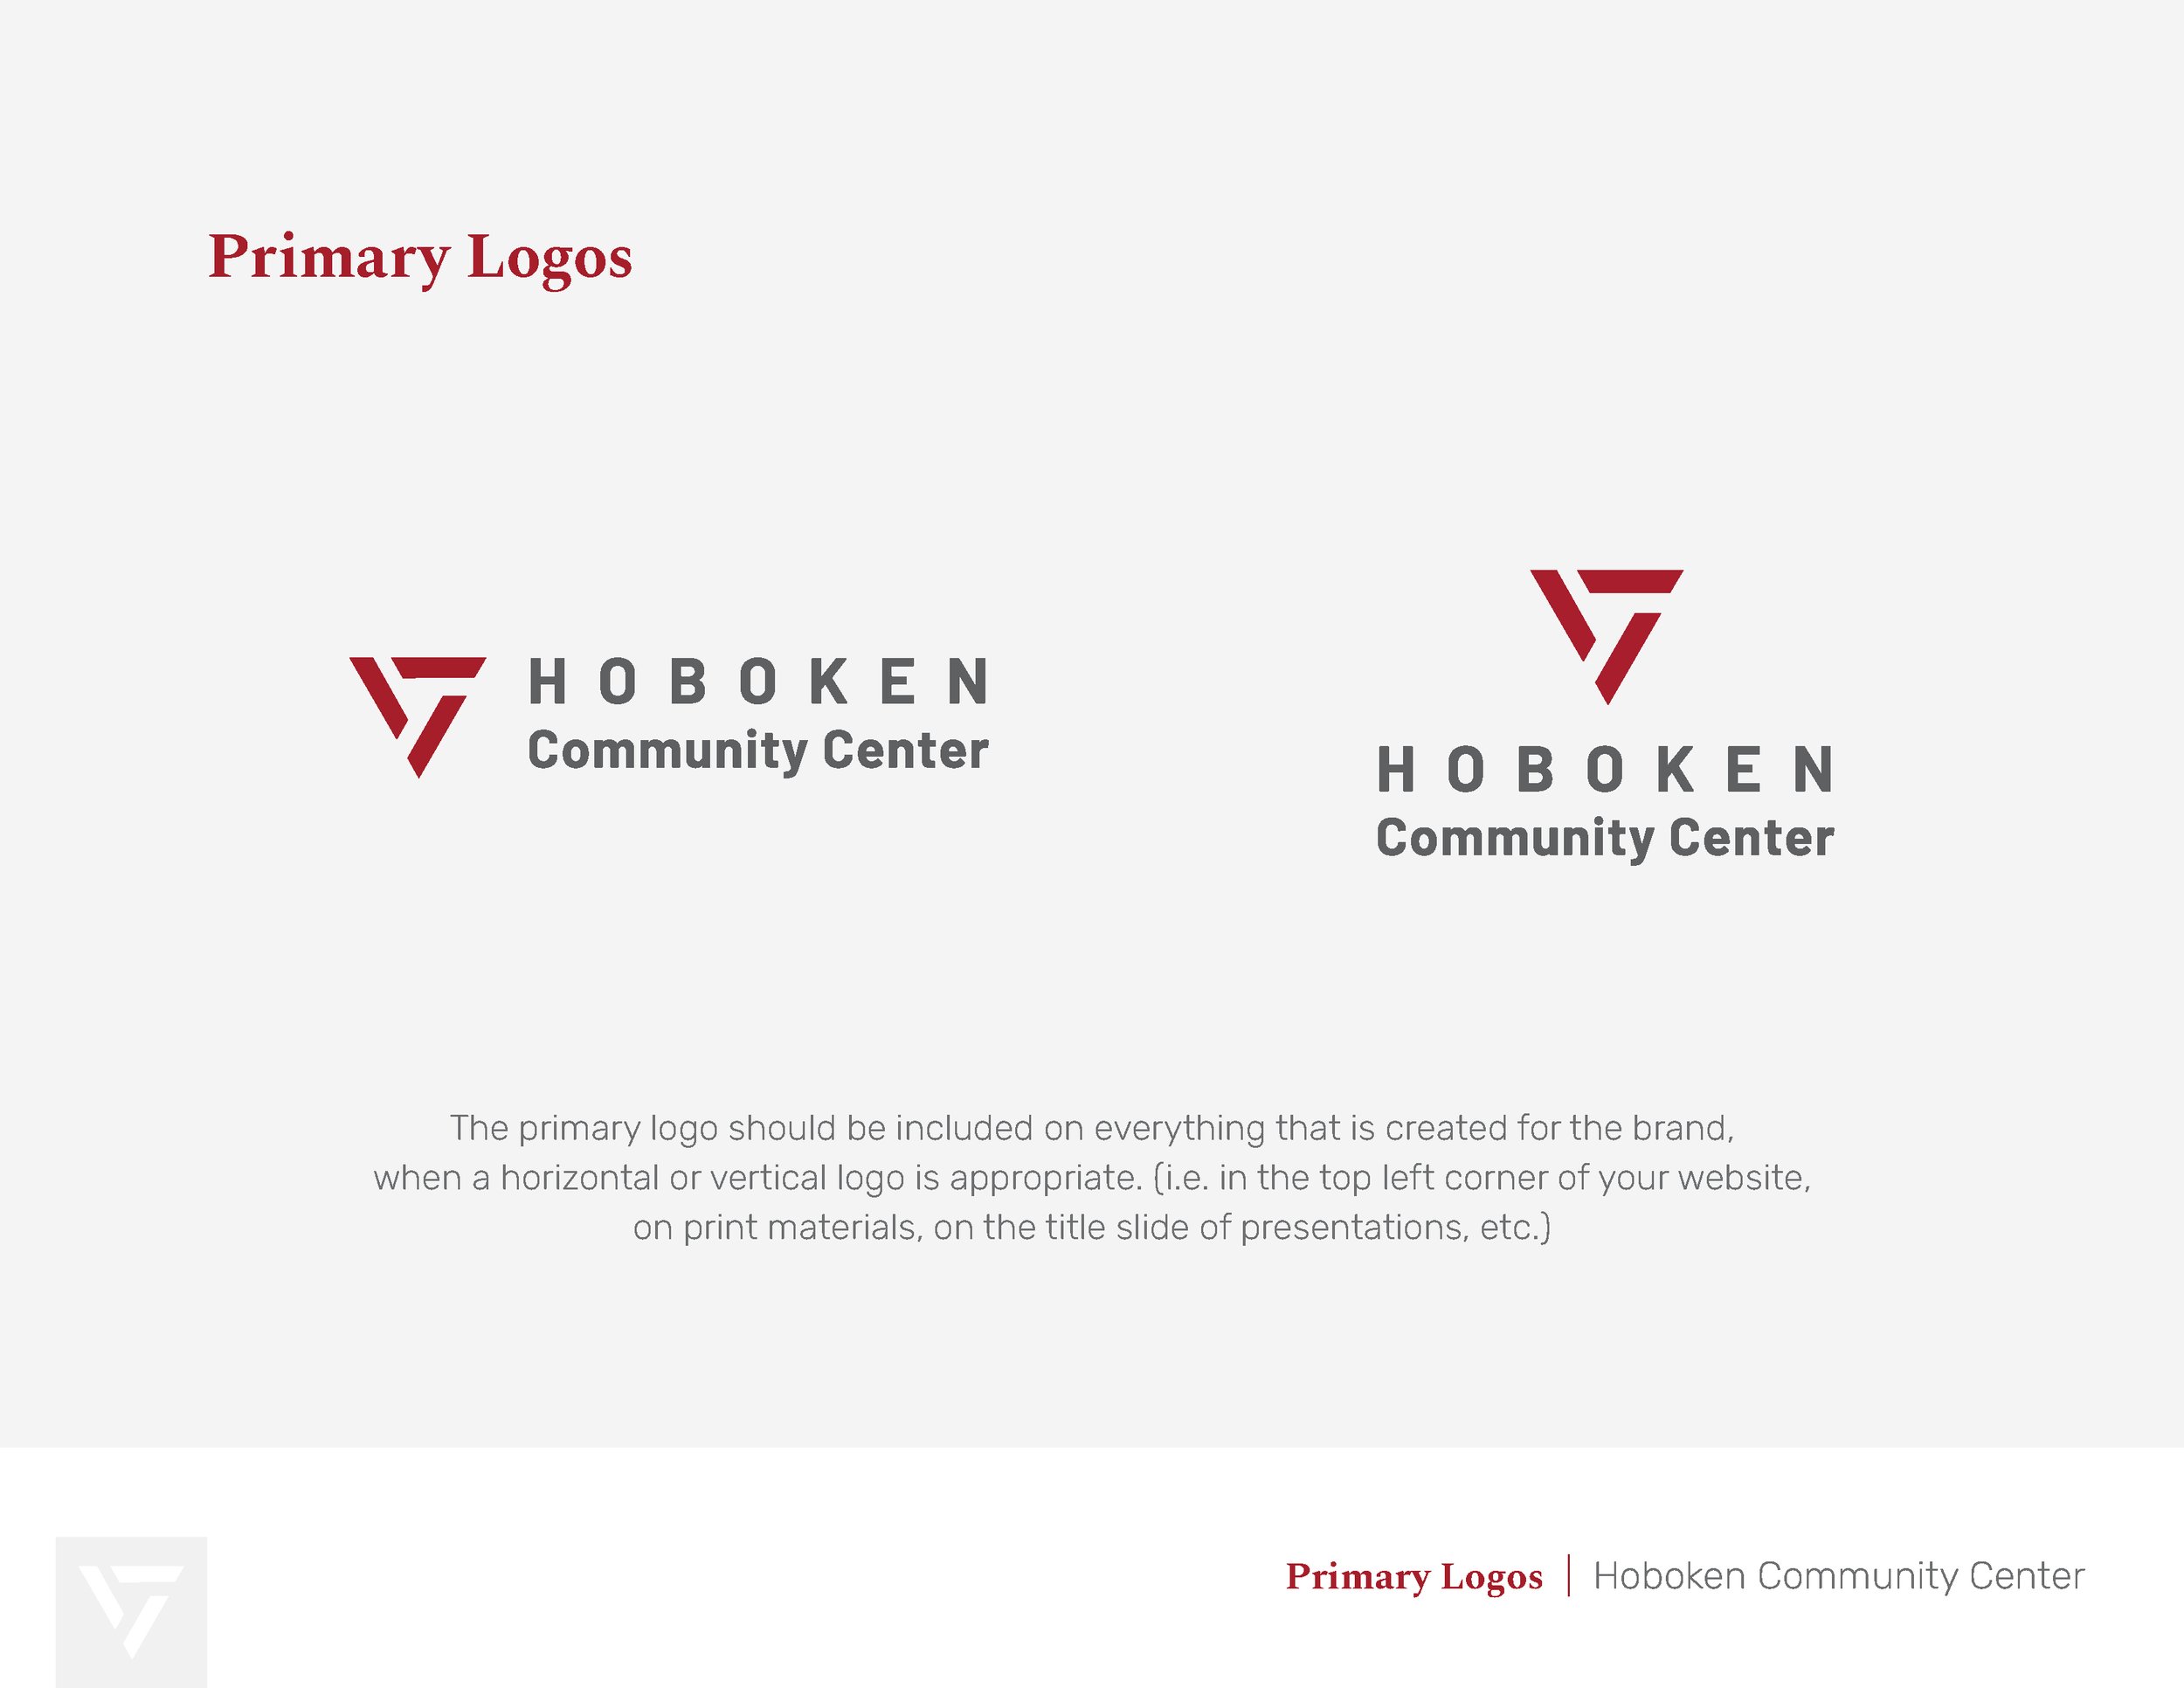 Hoboken Community Center Primary Logo Design